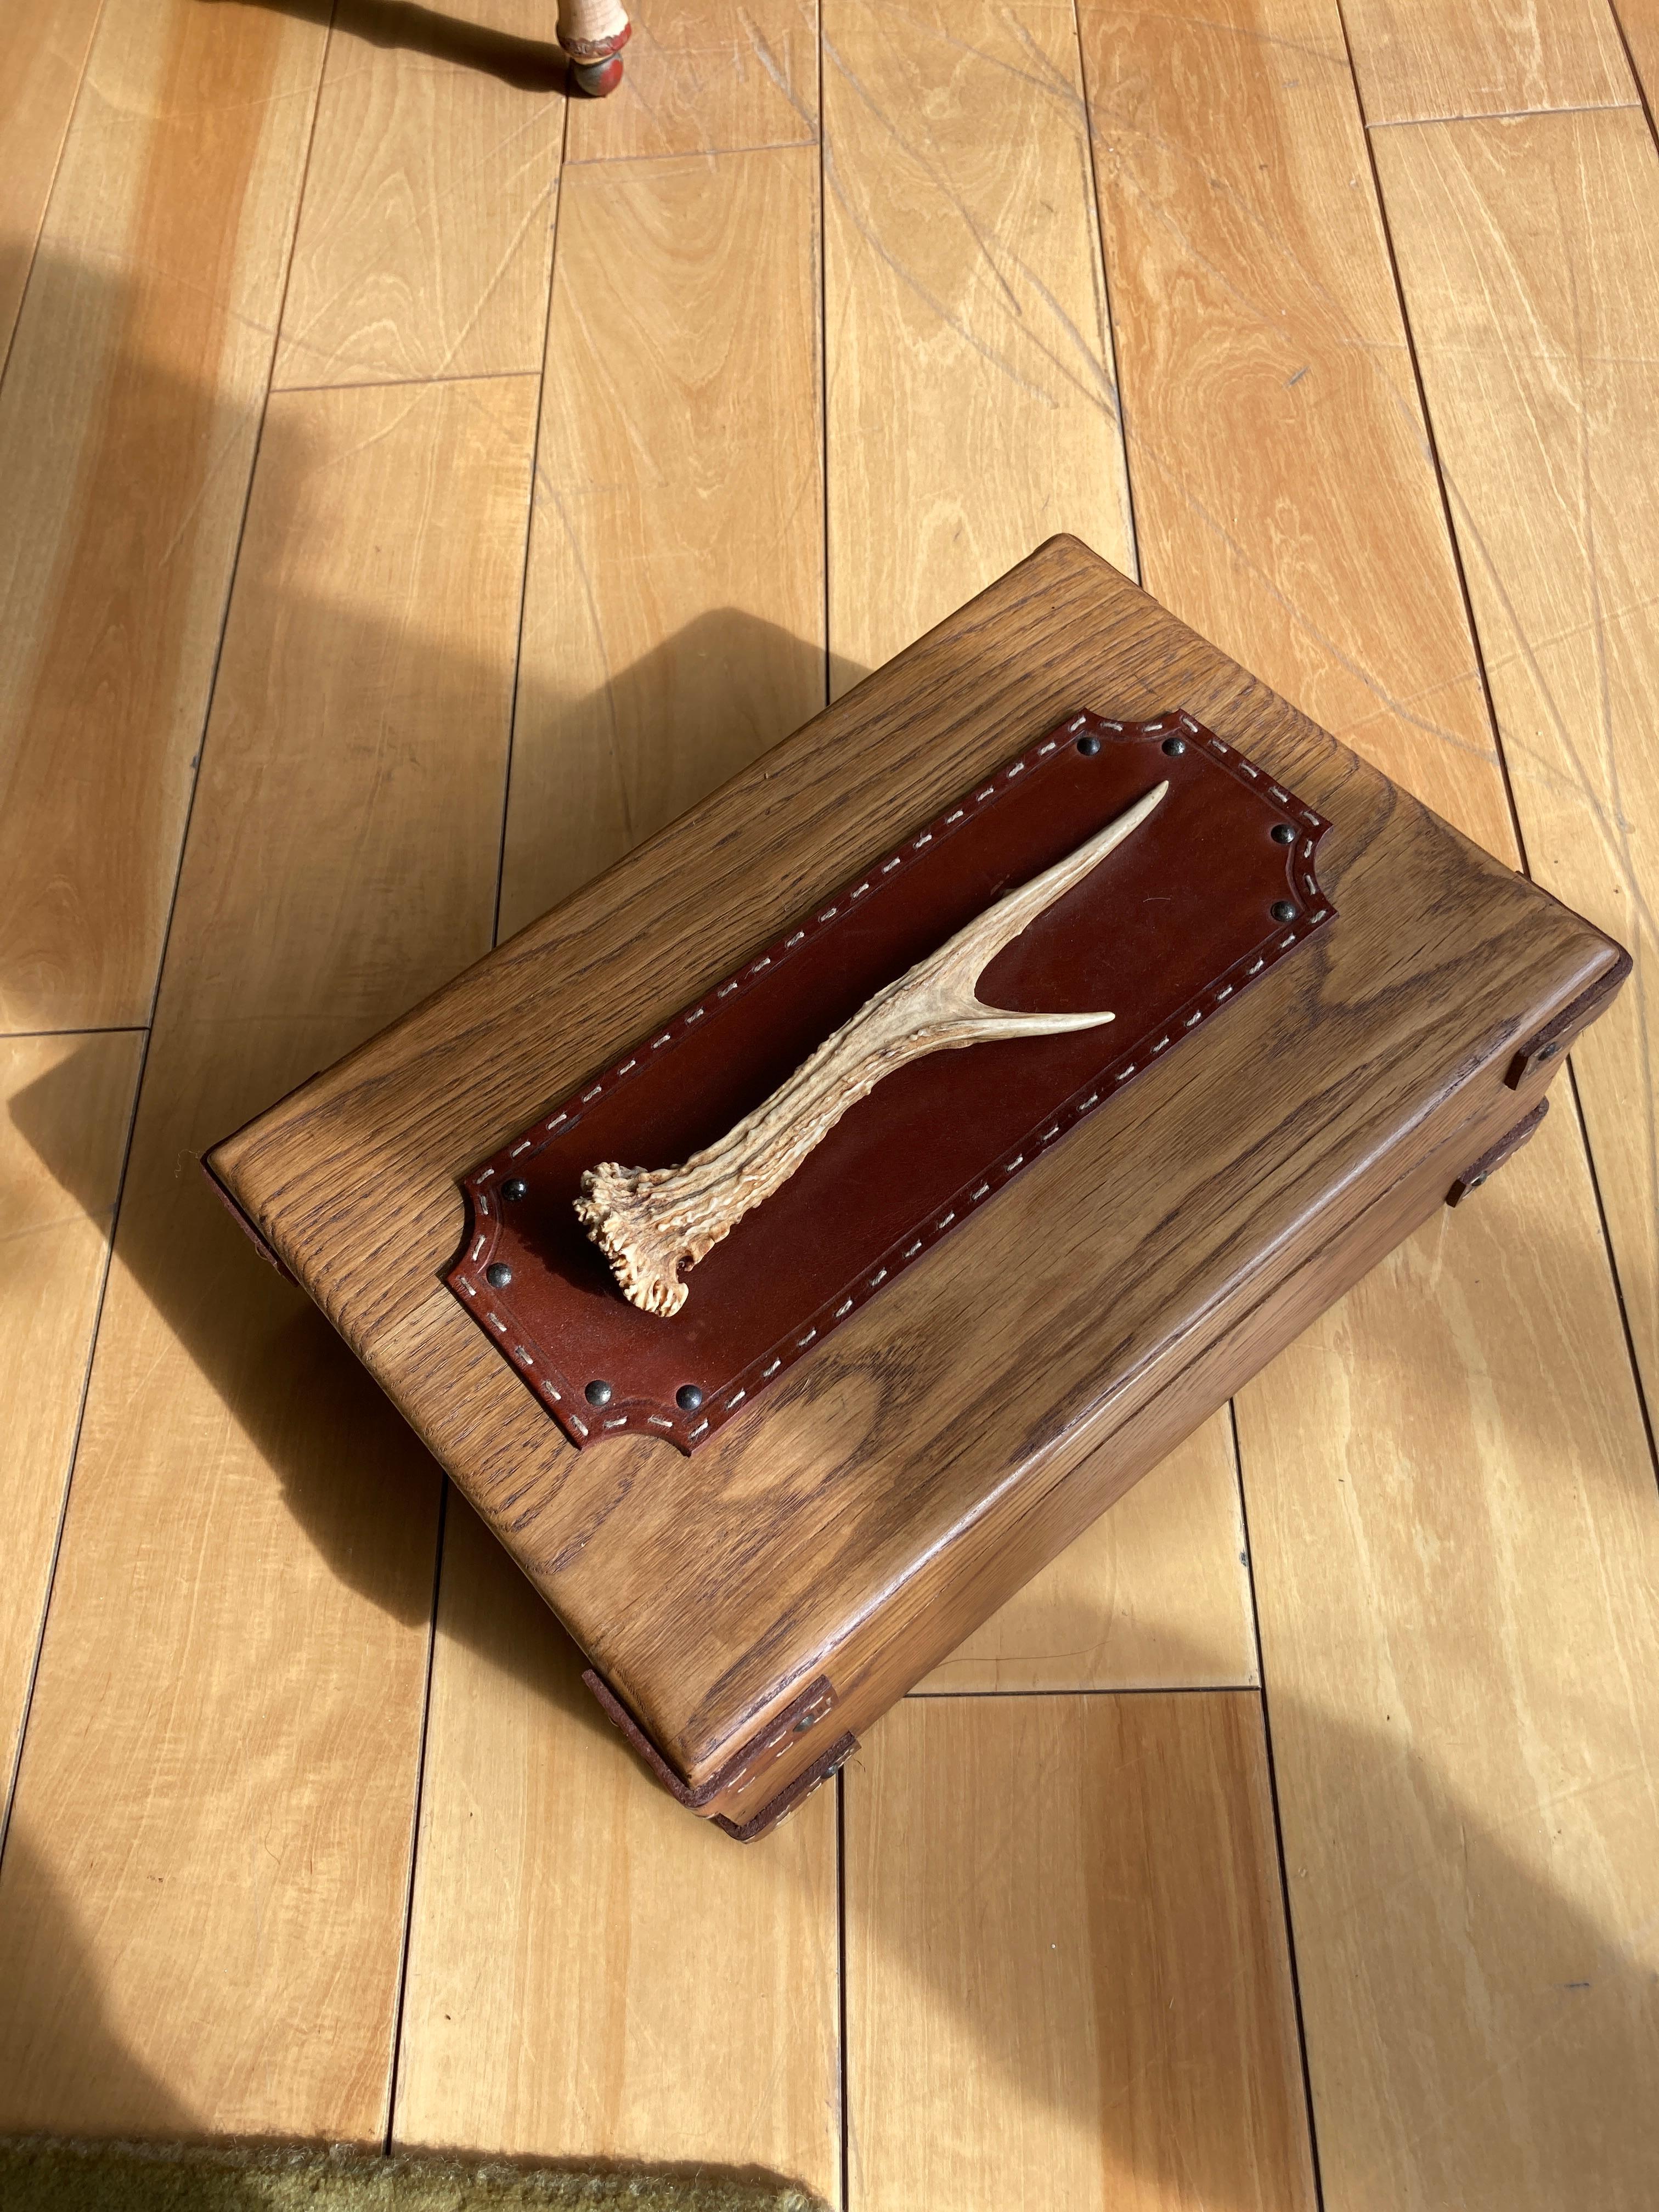 Seltene dekorative Schachtel aus Eiche mit genähtem Leder  und liebes Holz dekorativ  Artefakt
CIRCA 1950er Jahre
